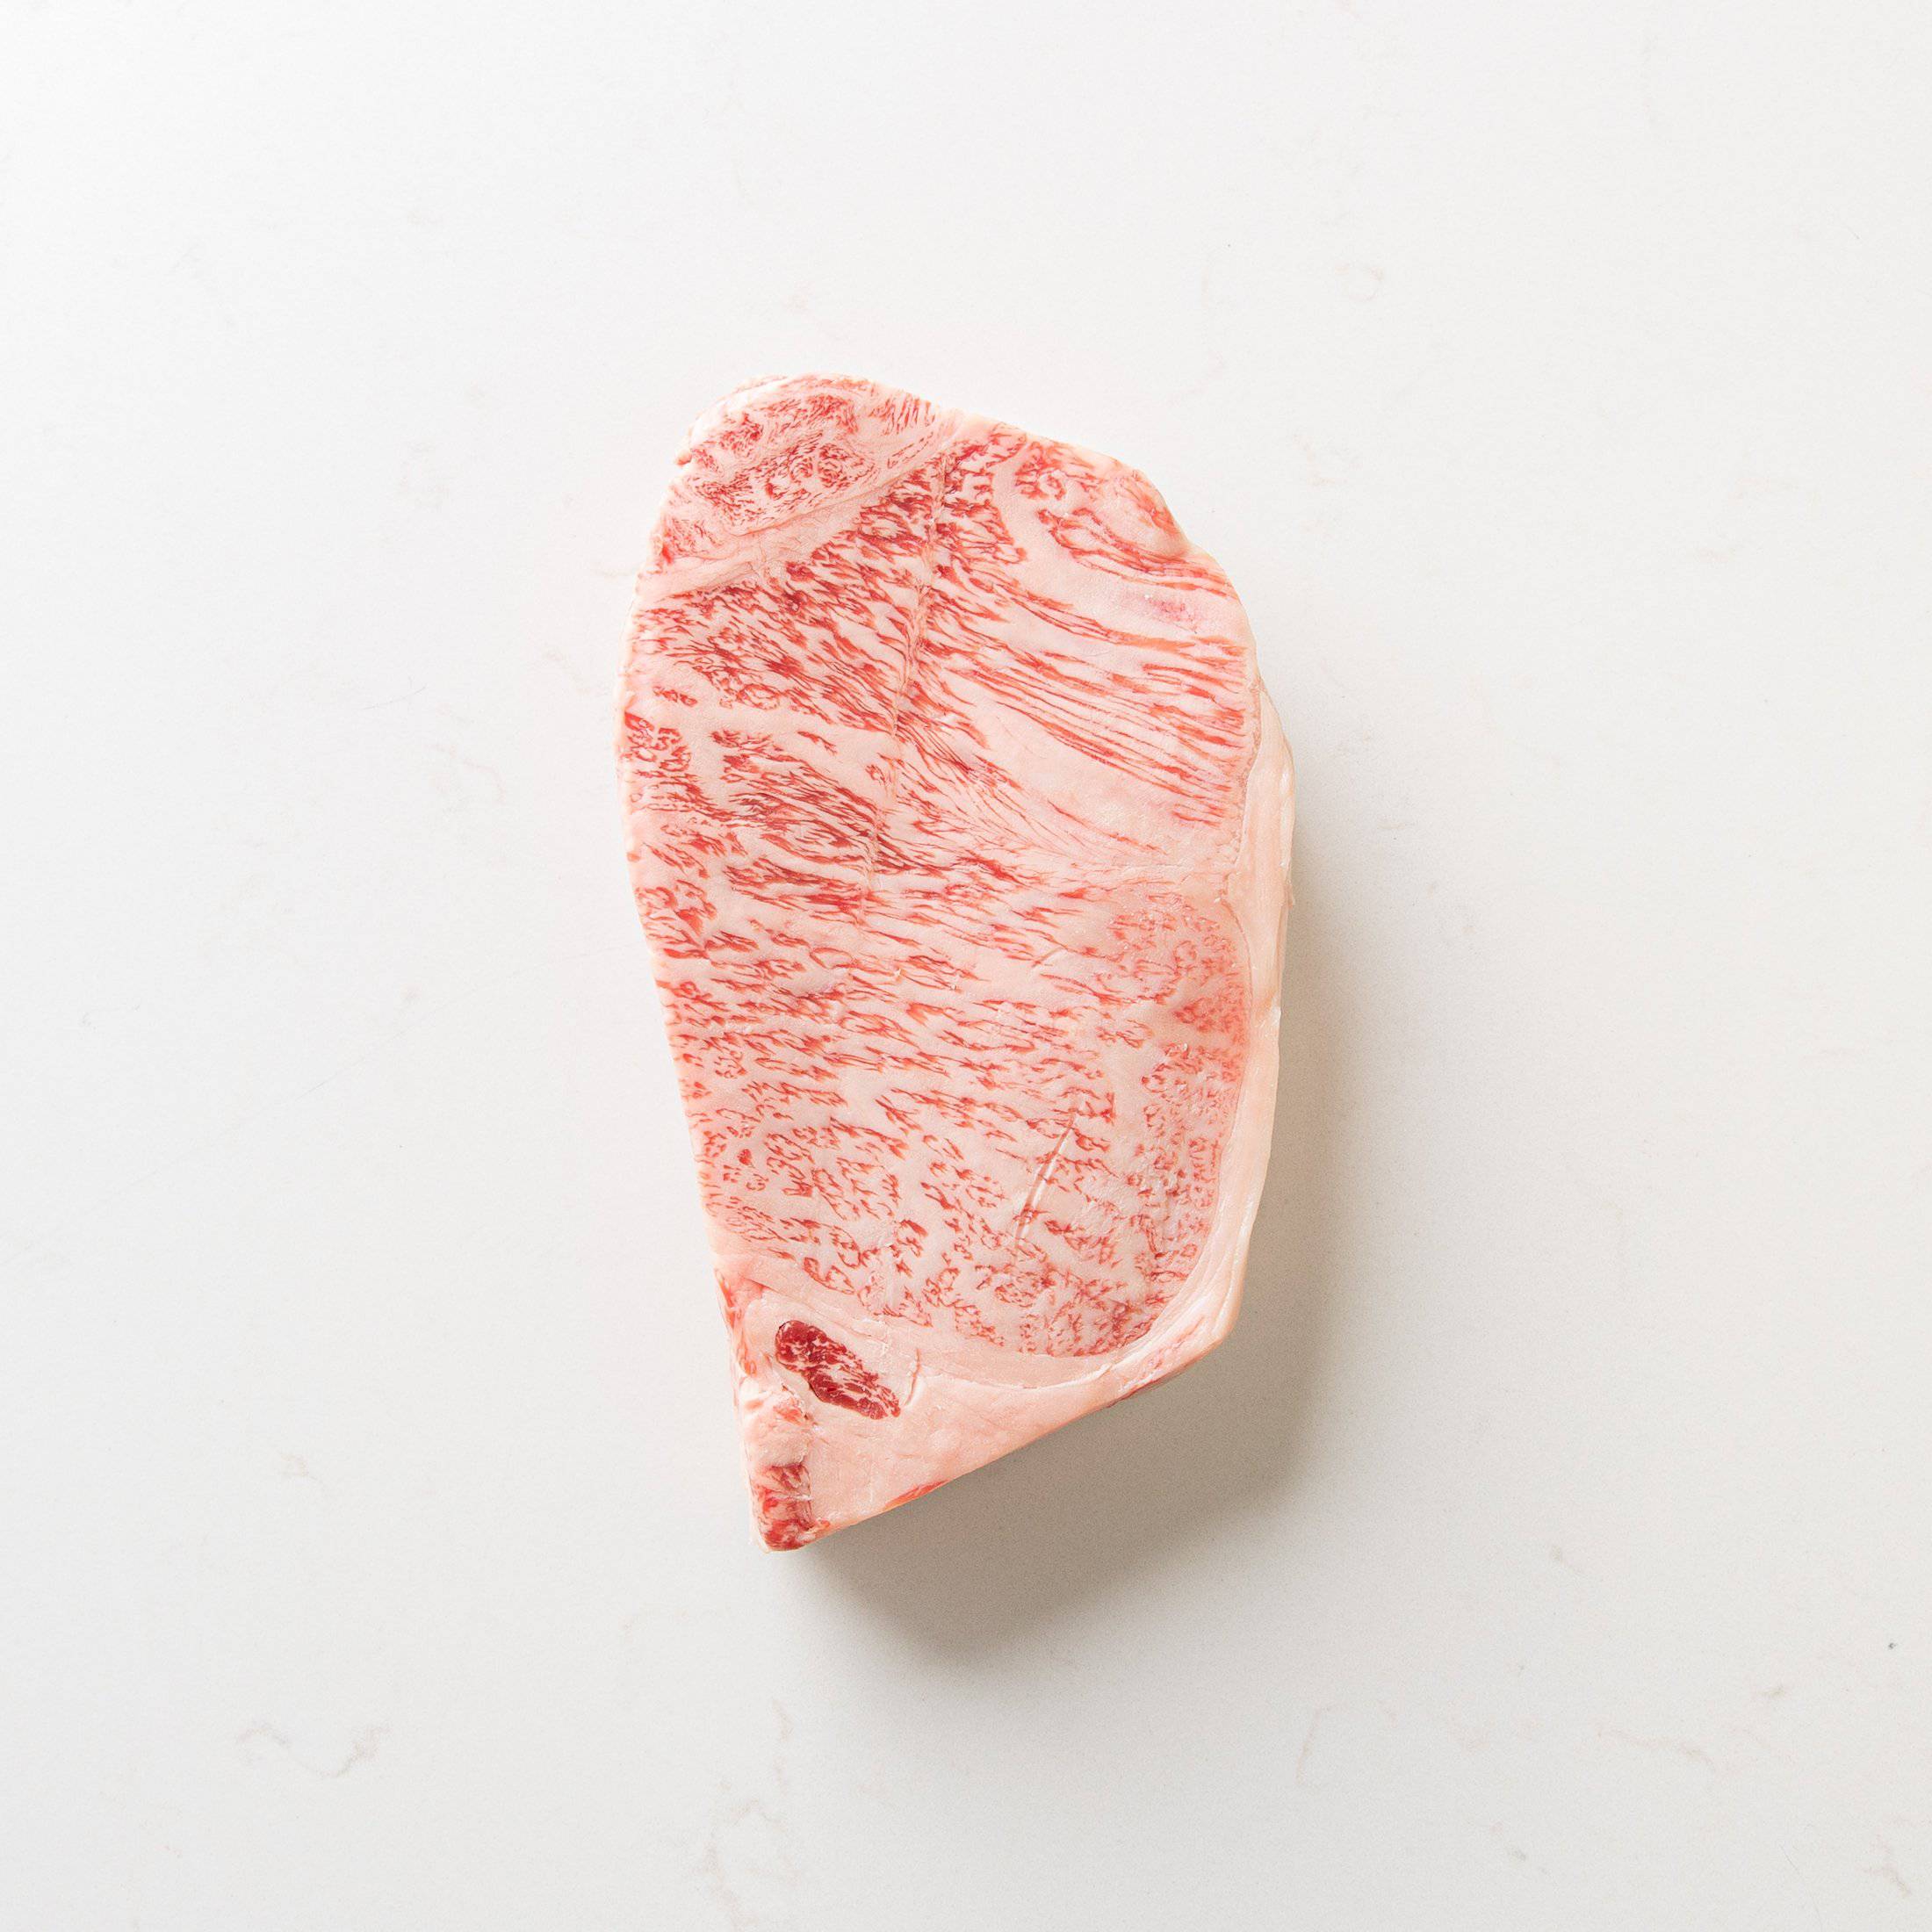 Japanese A5 Wagyu Kagoshima Sirloin Steak